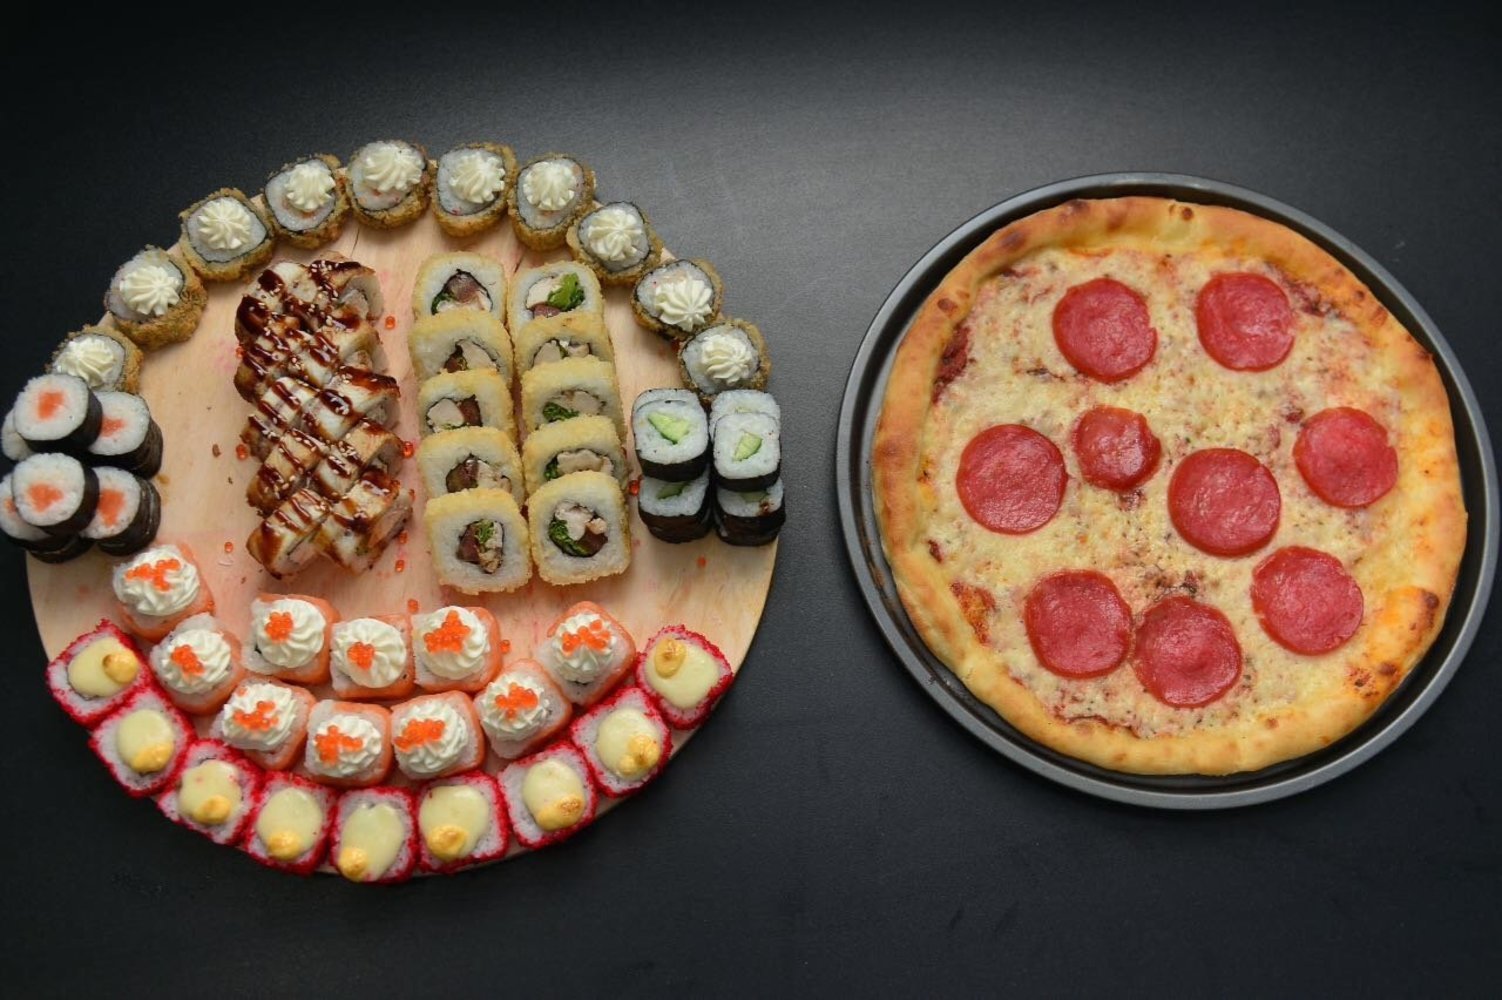 фото роллов и пиццы на столе дома фото 78